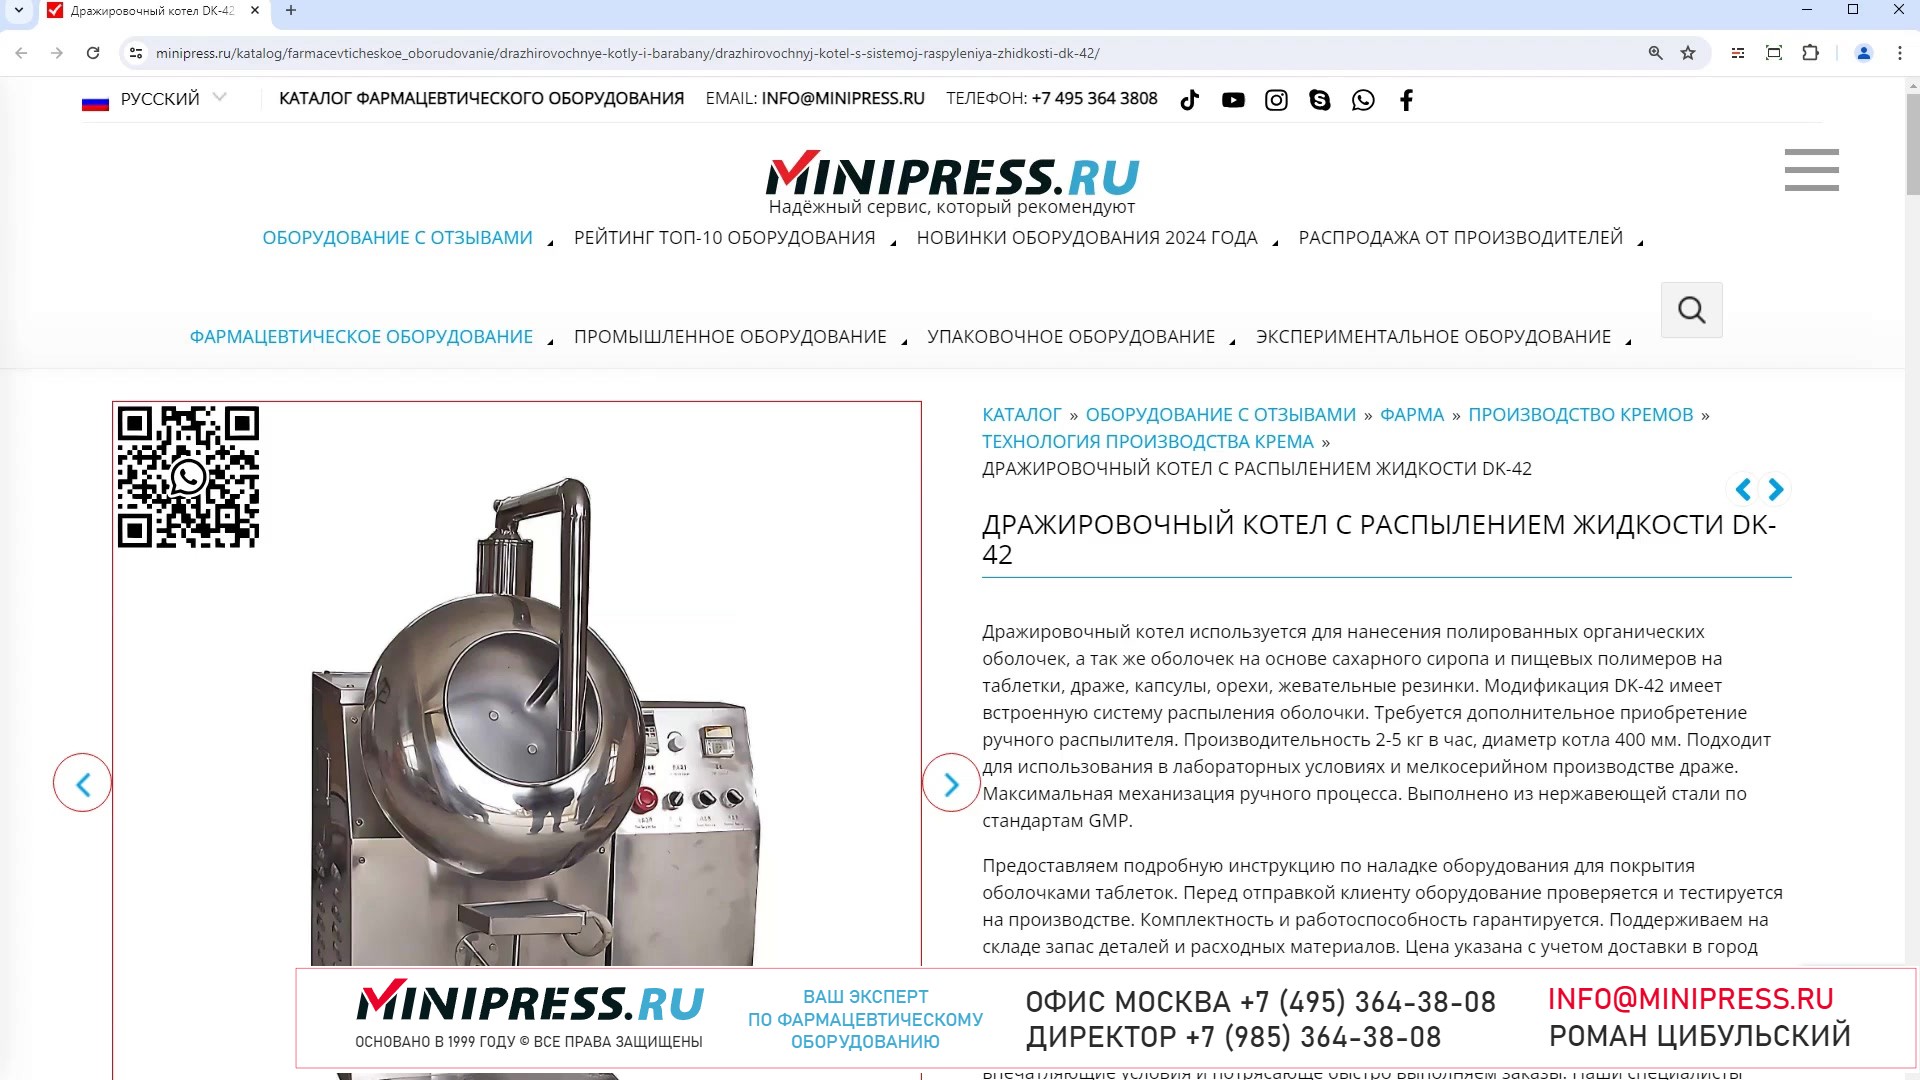 Minipress.ru Дражировочный котел с распылением жидкости DK-42